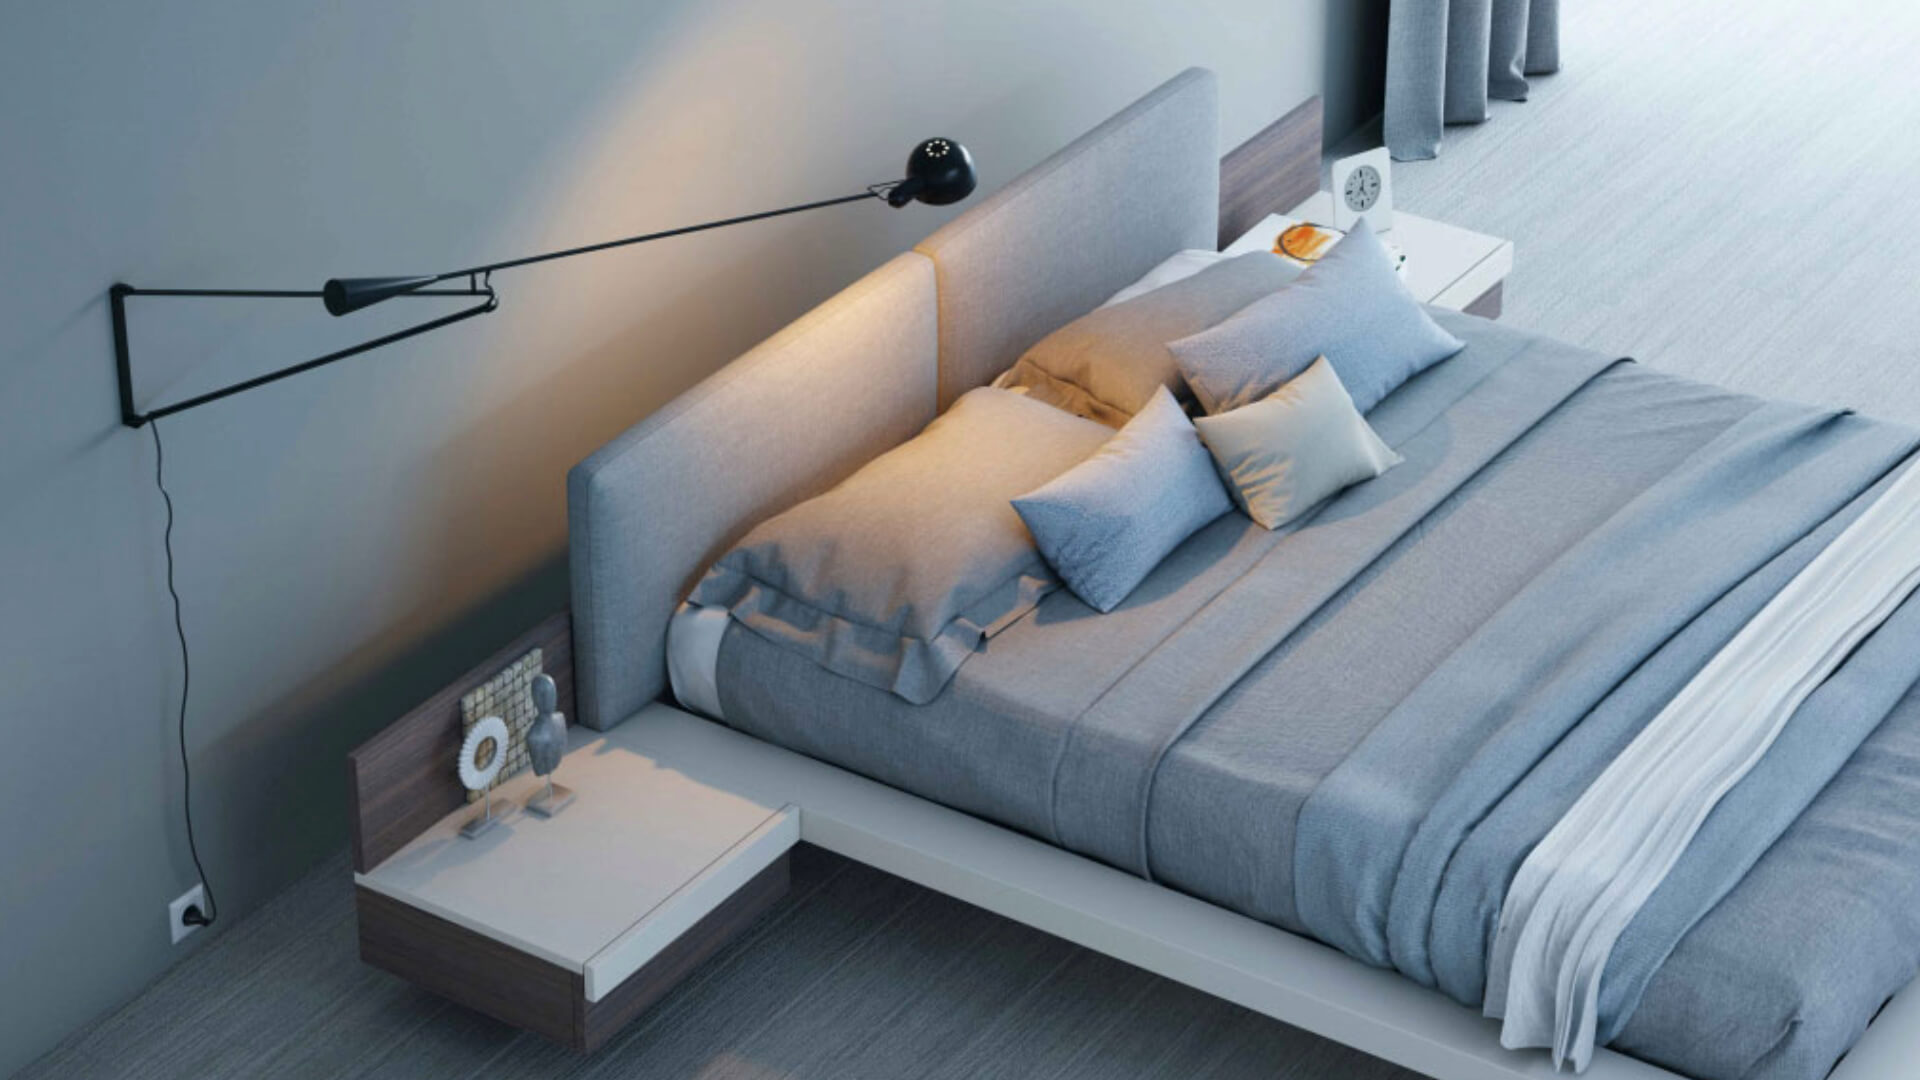 Blog IDW - Consigli utili per scegliere i giusti mobili per la tua camera da letto